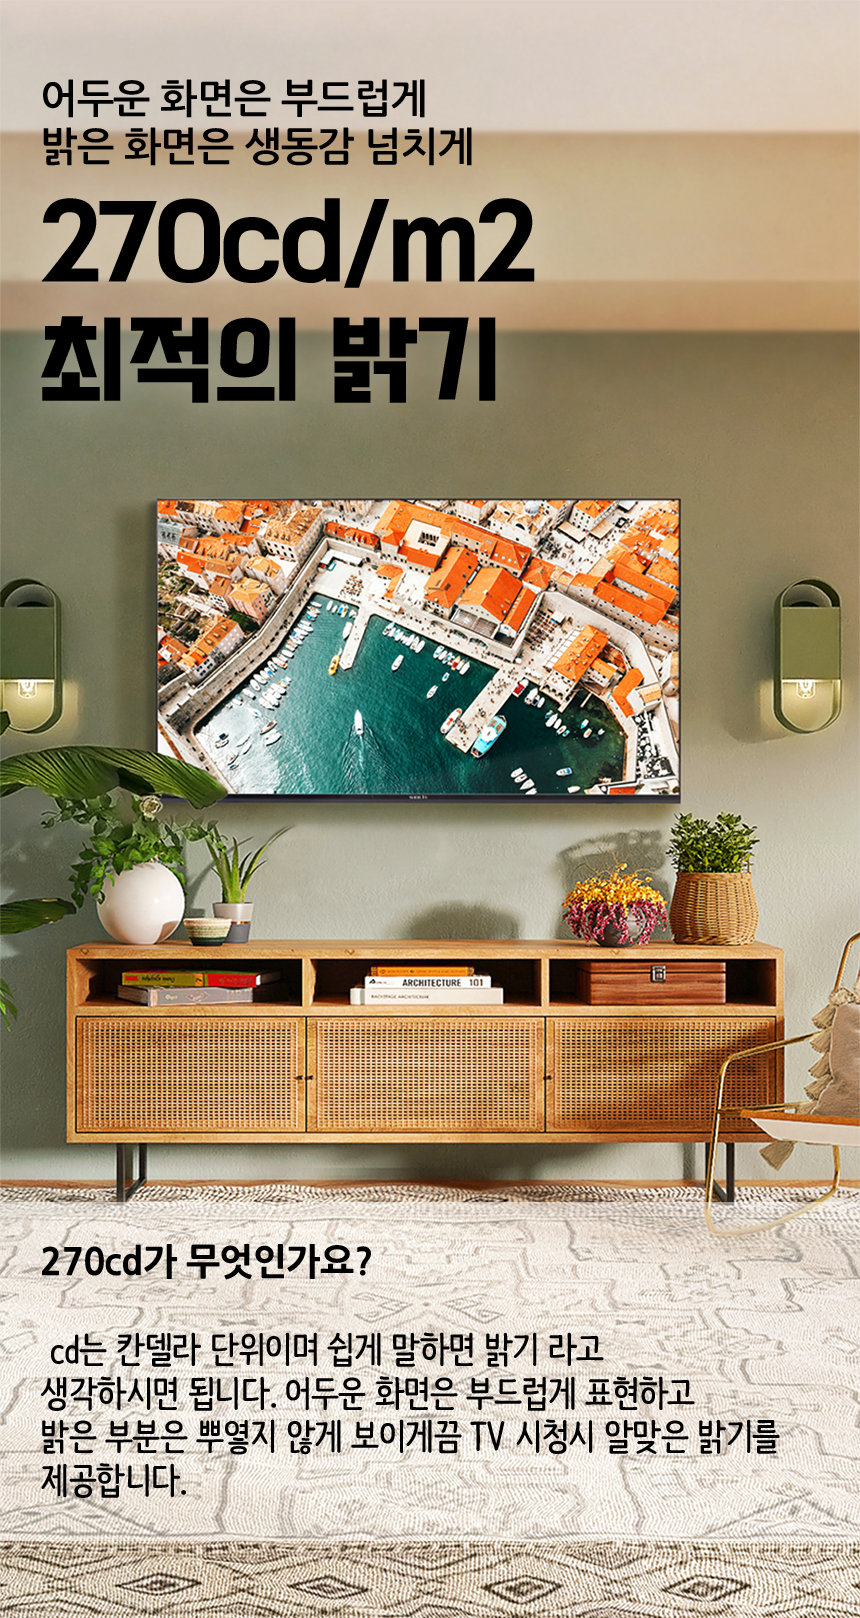 와이드뷰 4K UHD LED TV109cm(43인치) · WVH430UHD-E01 · 스탠드형 · 자가설치